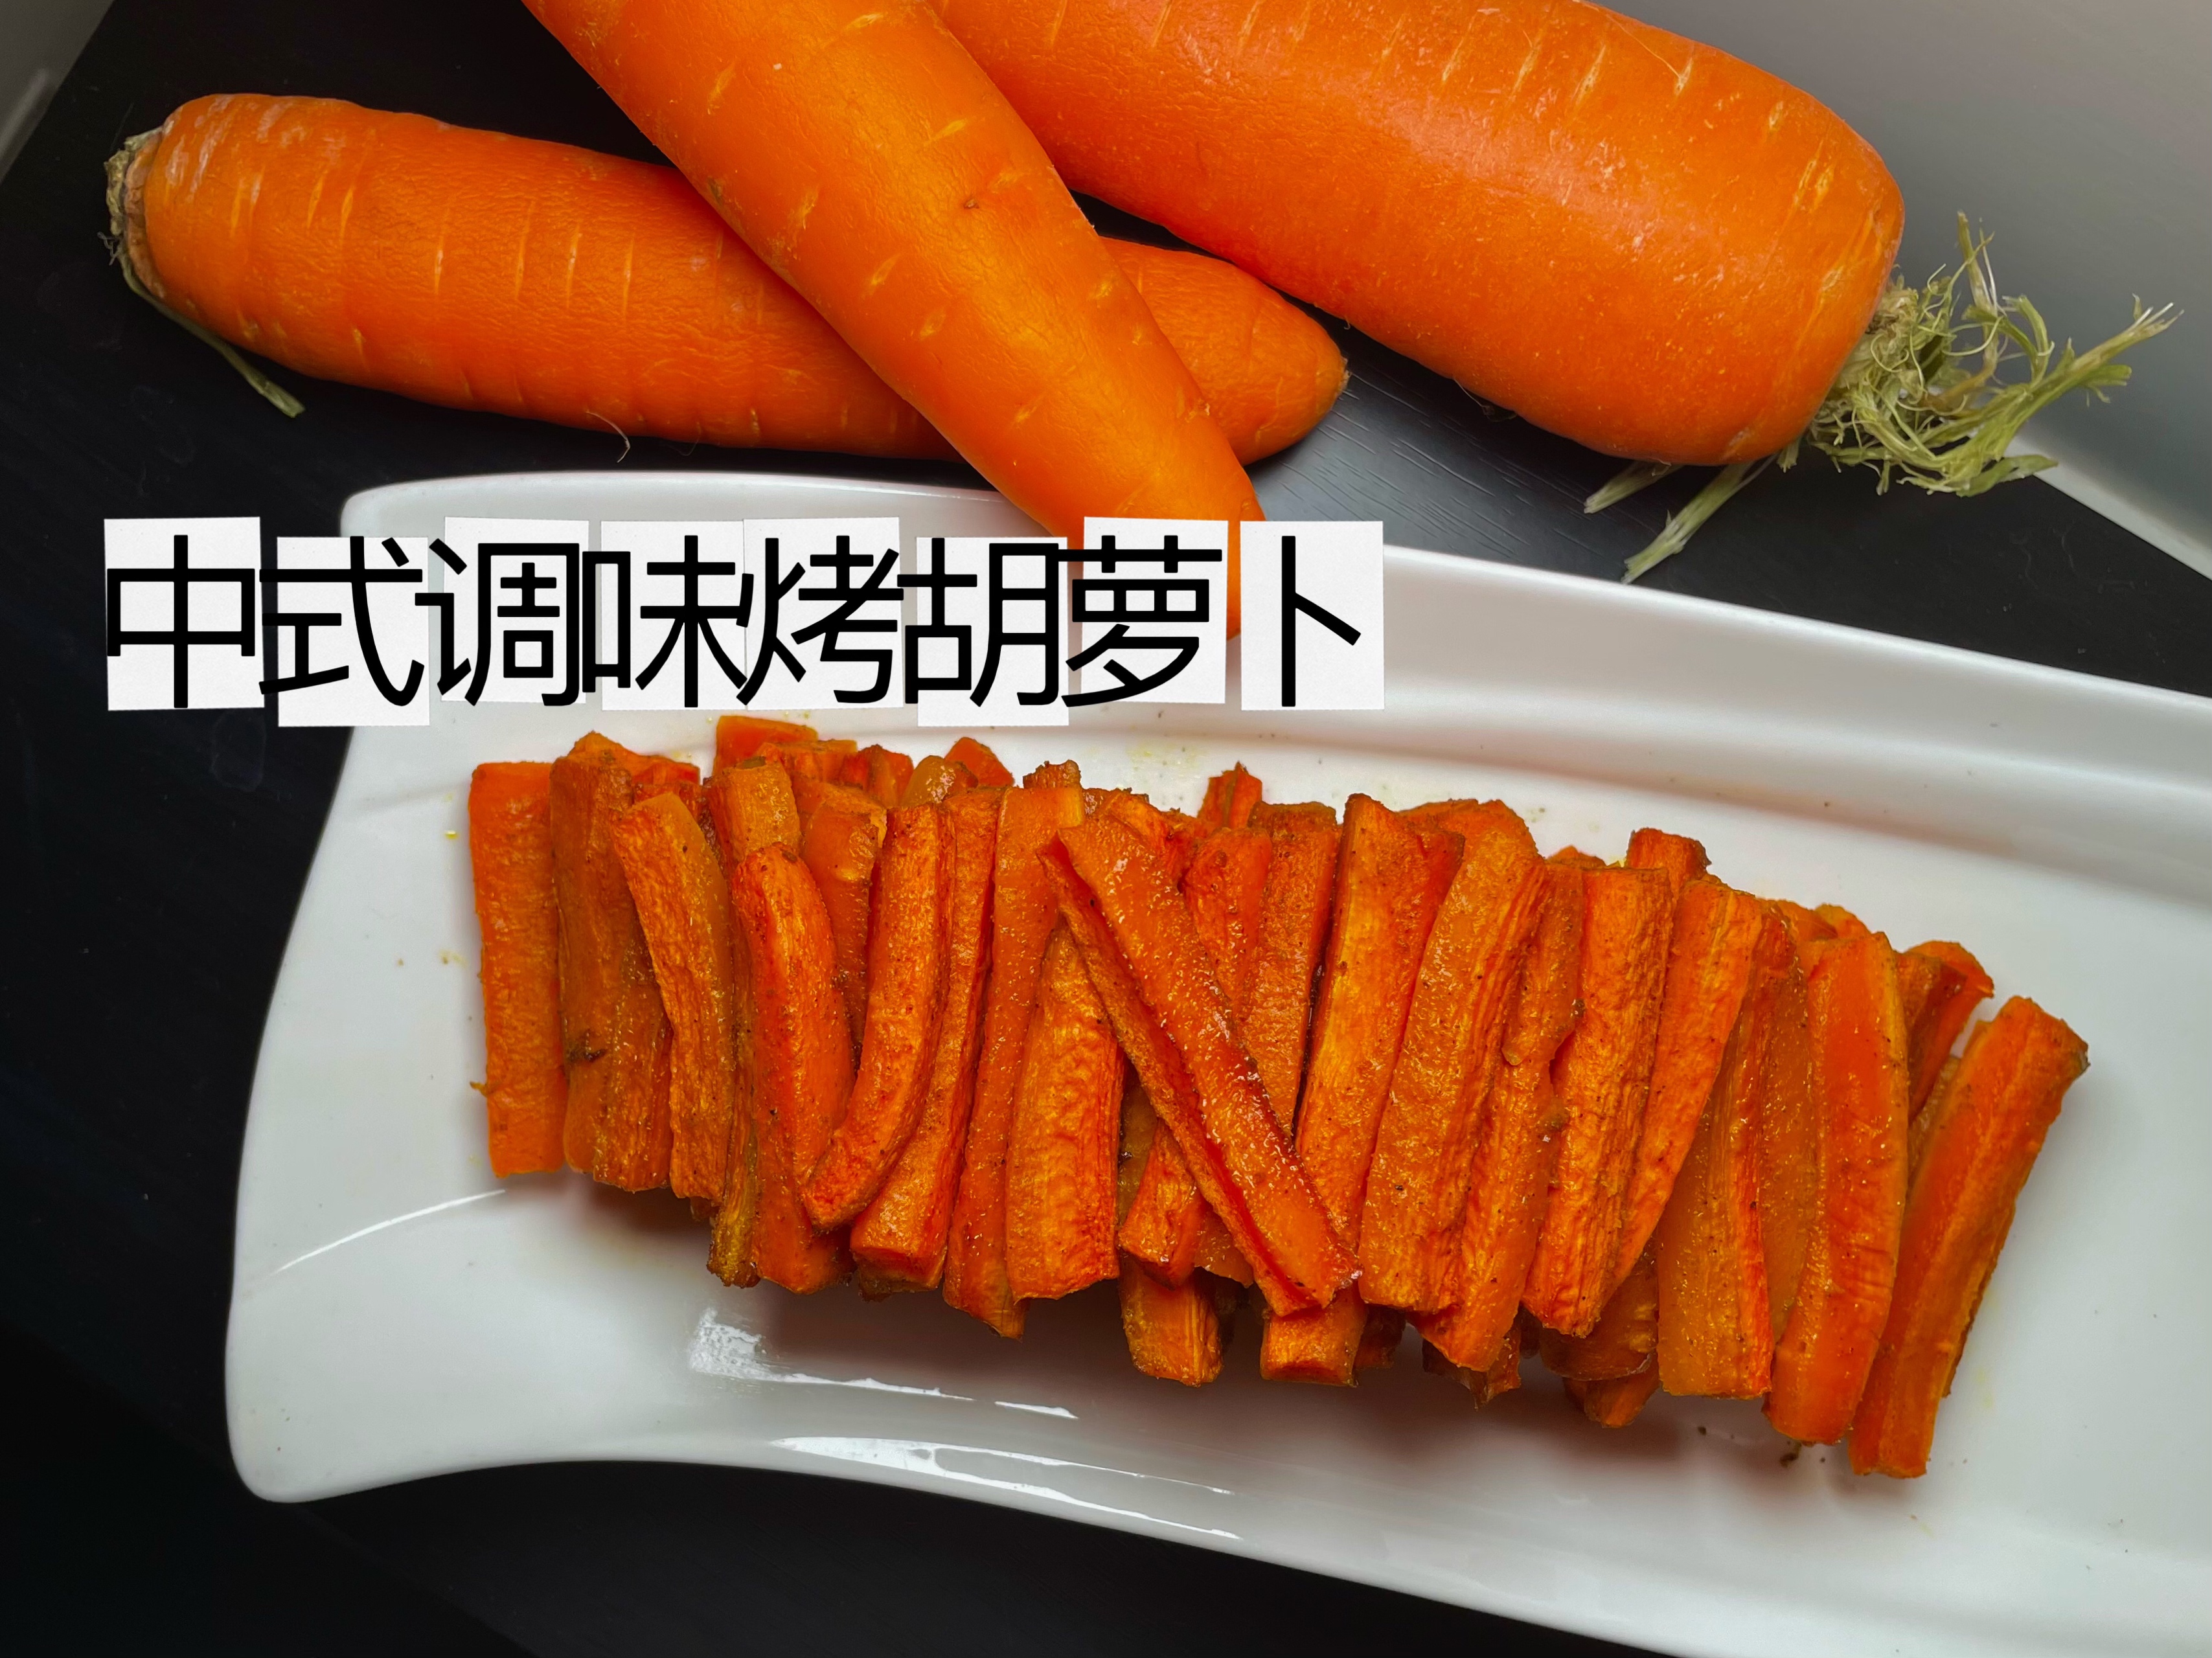 中式调味烤胡萝卜🥕极速消耗疫情囤货的做法